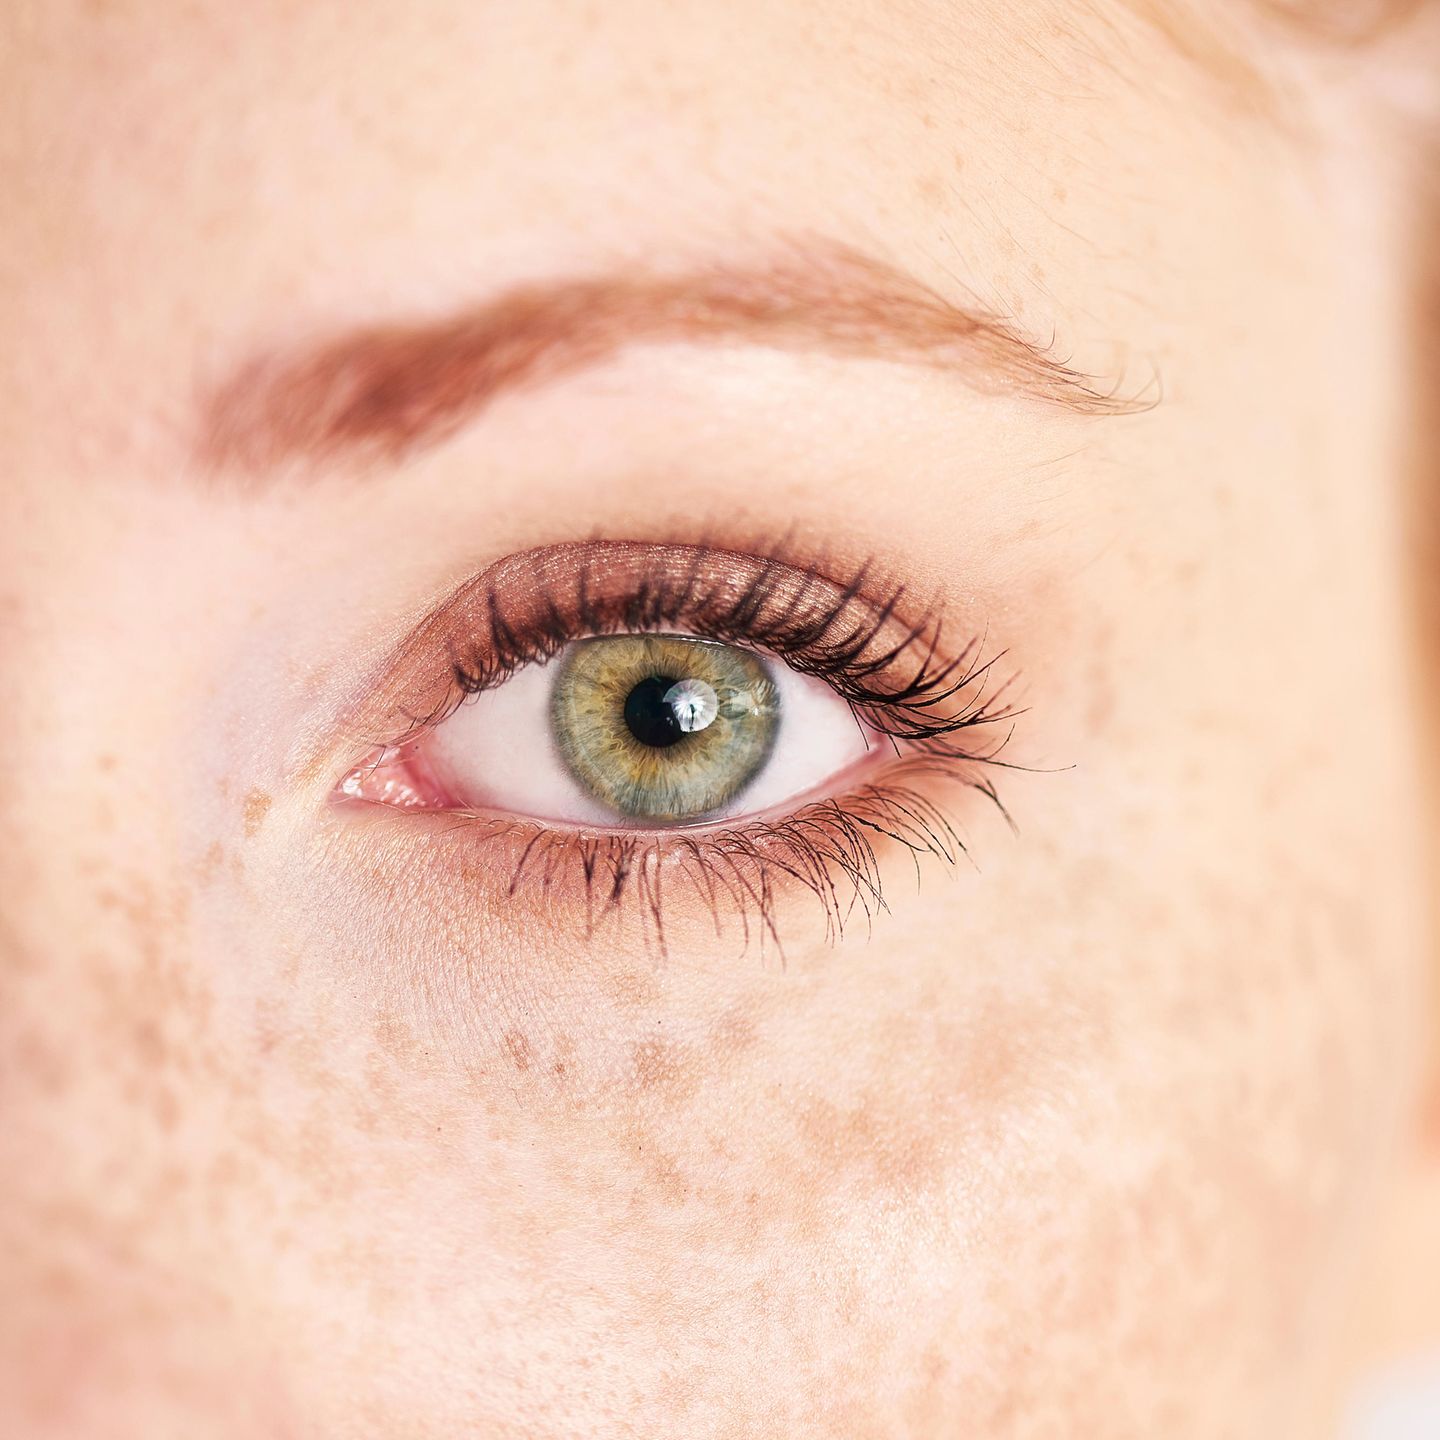 Empfindliche Augen - das hilft! | BRIGITTE.de